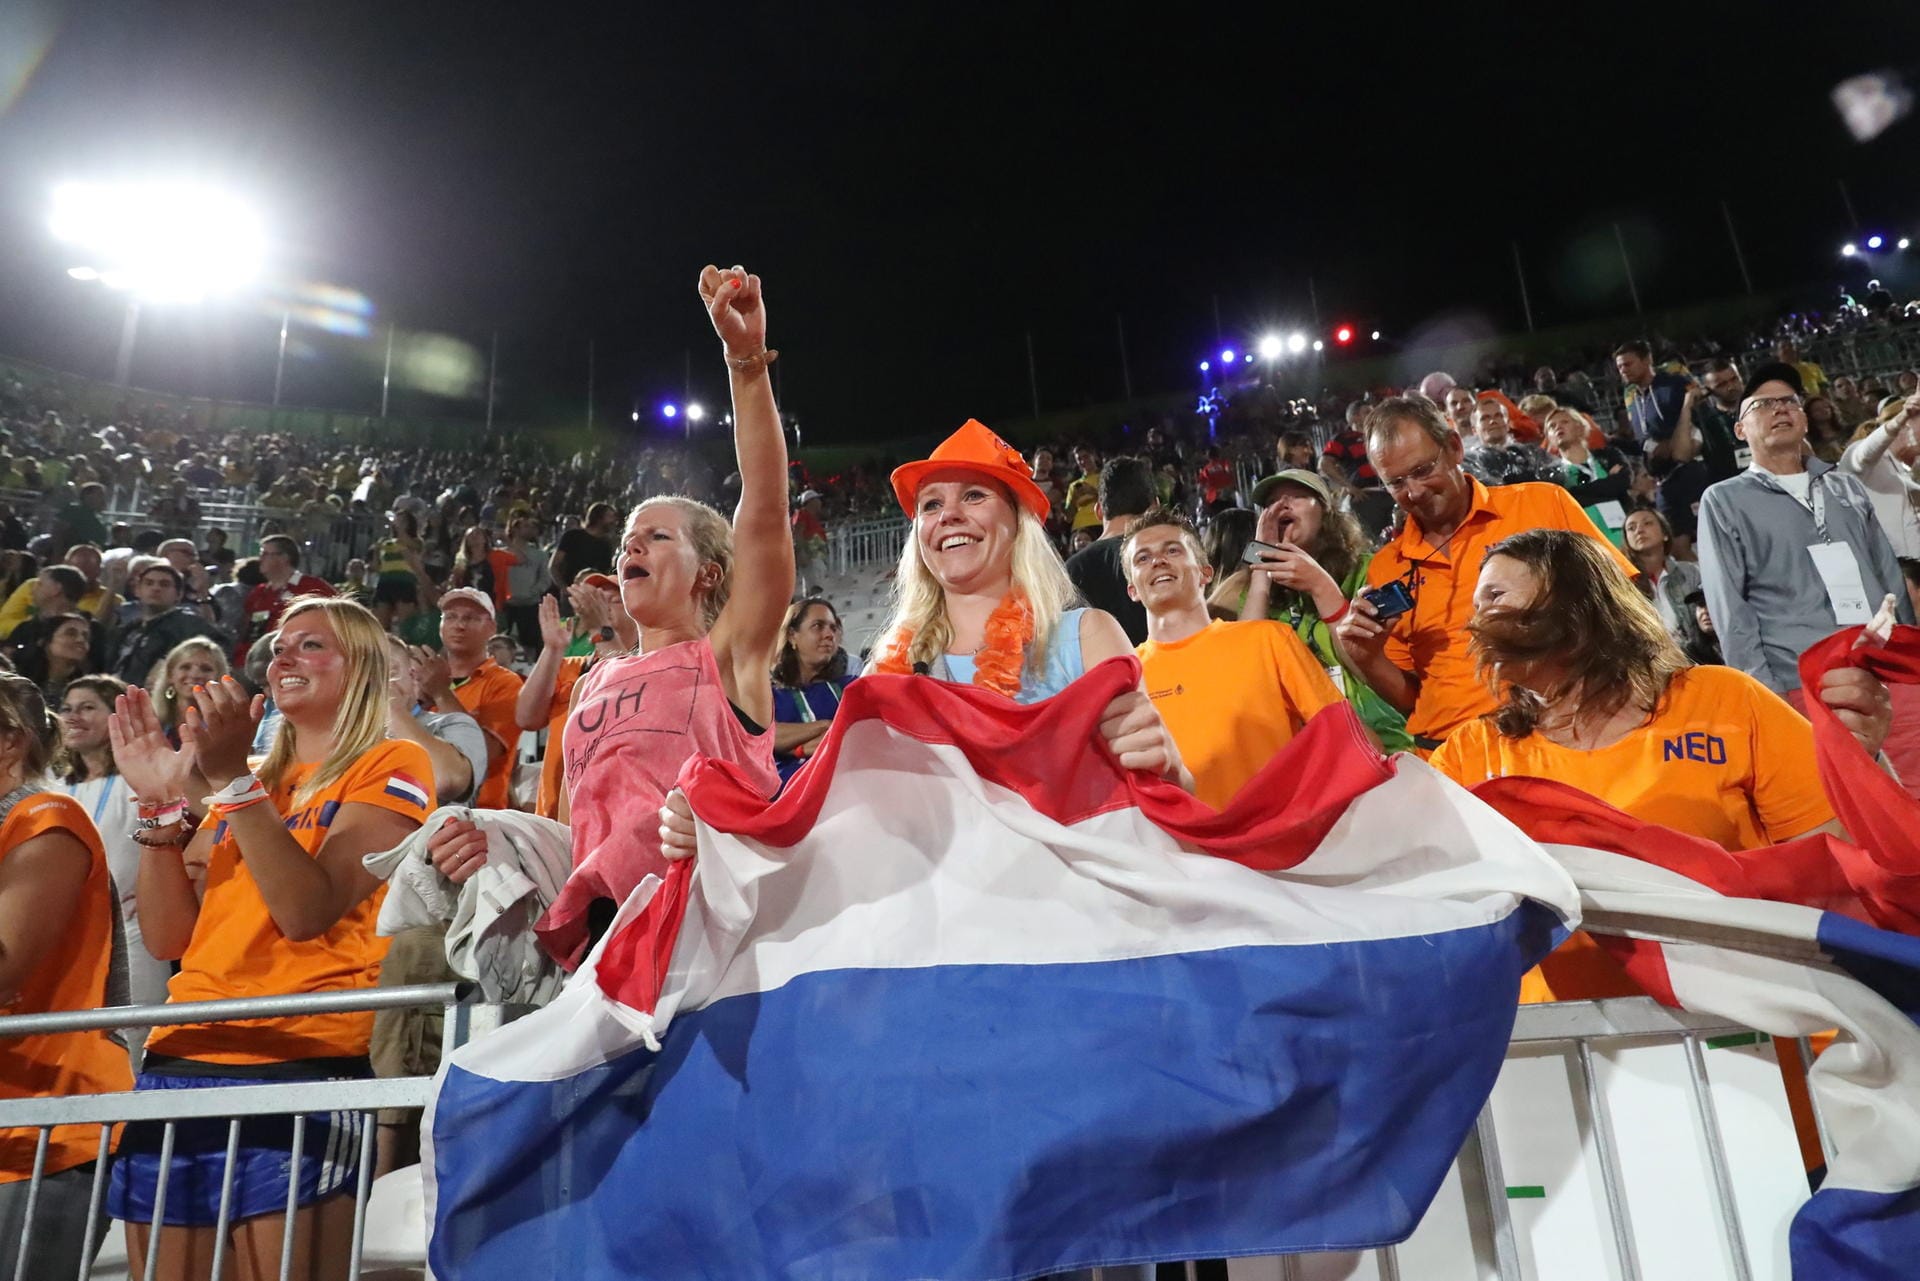 Wo niederländische Athleten aktiv sind, sind auch die Fans in Oranje nicht weit. So wie hier an der Copacabana beim Spiel um Bronze im Beachvolleyball zwischen den Niederländern Brouwer/Meeuwsen und den Russen Semeonov/Krasilnikov.